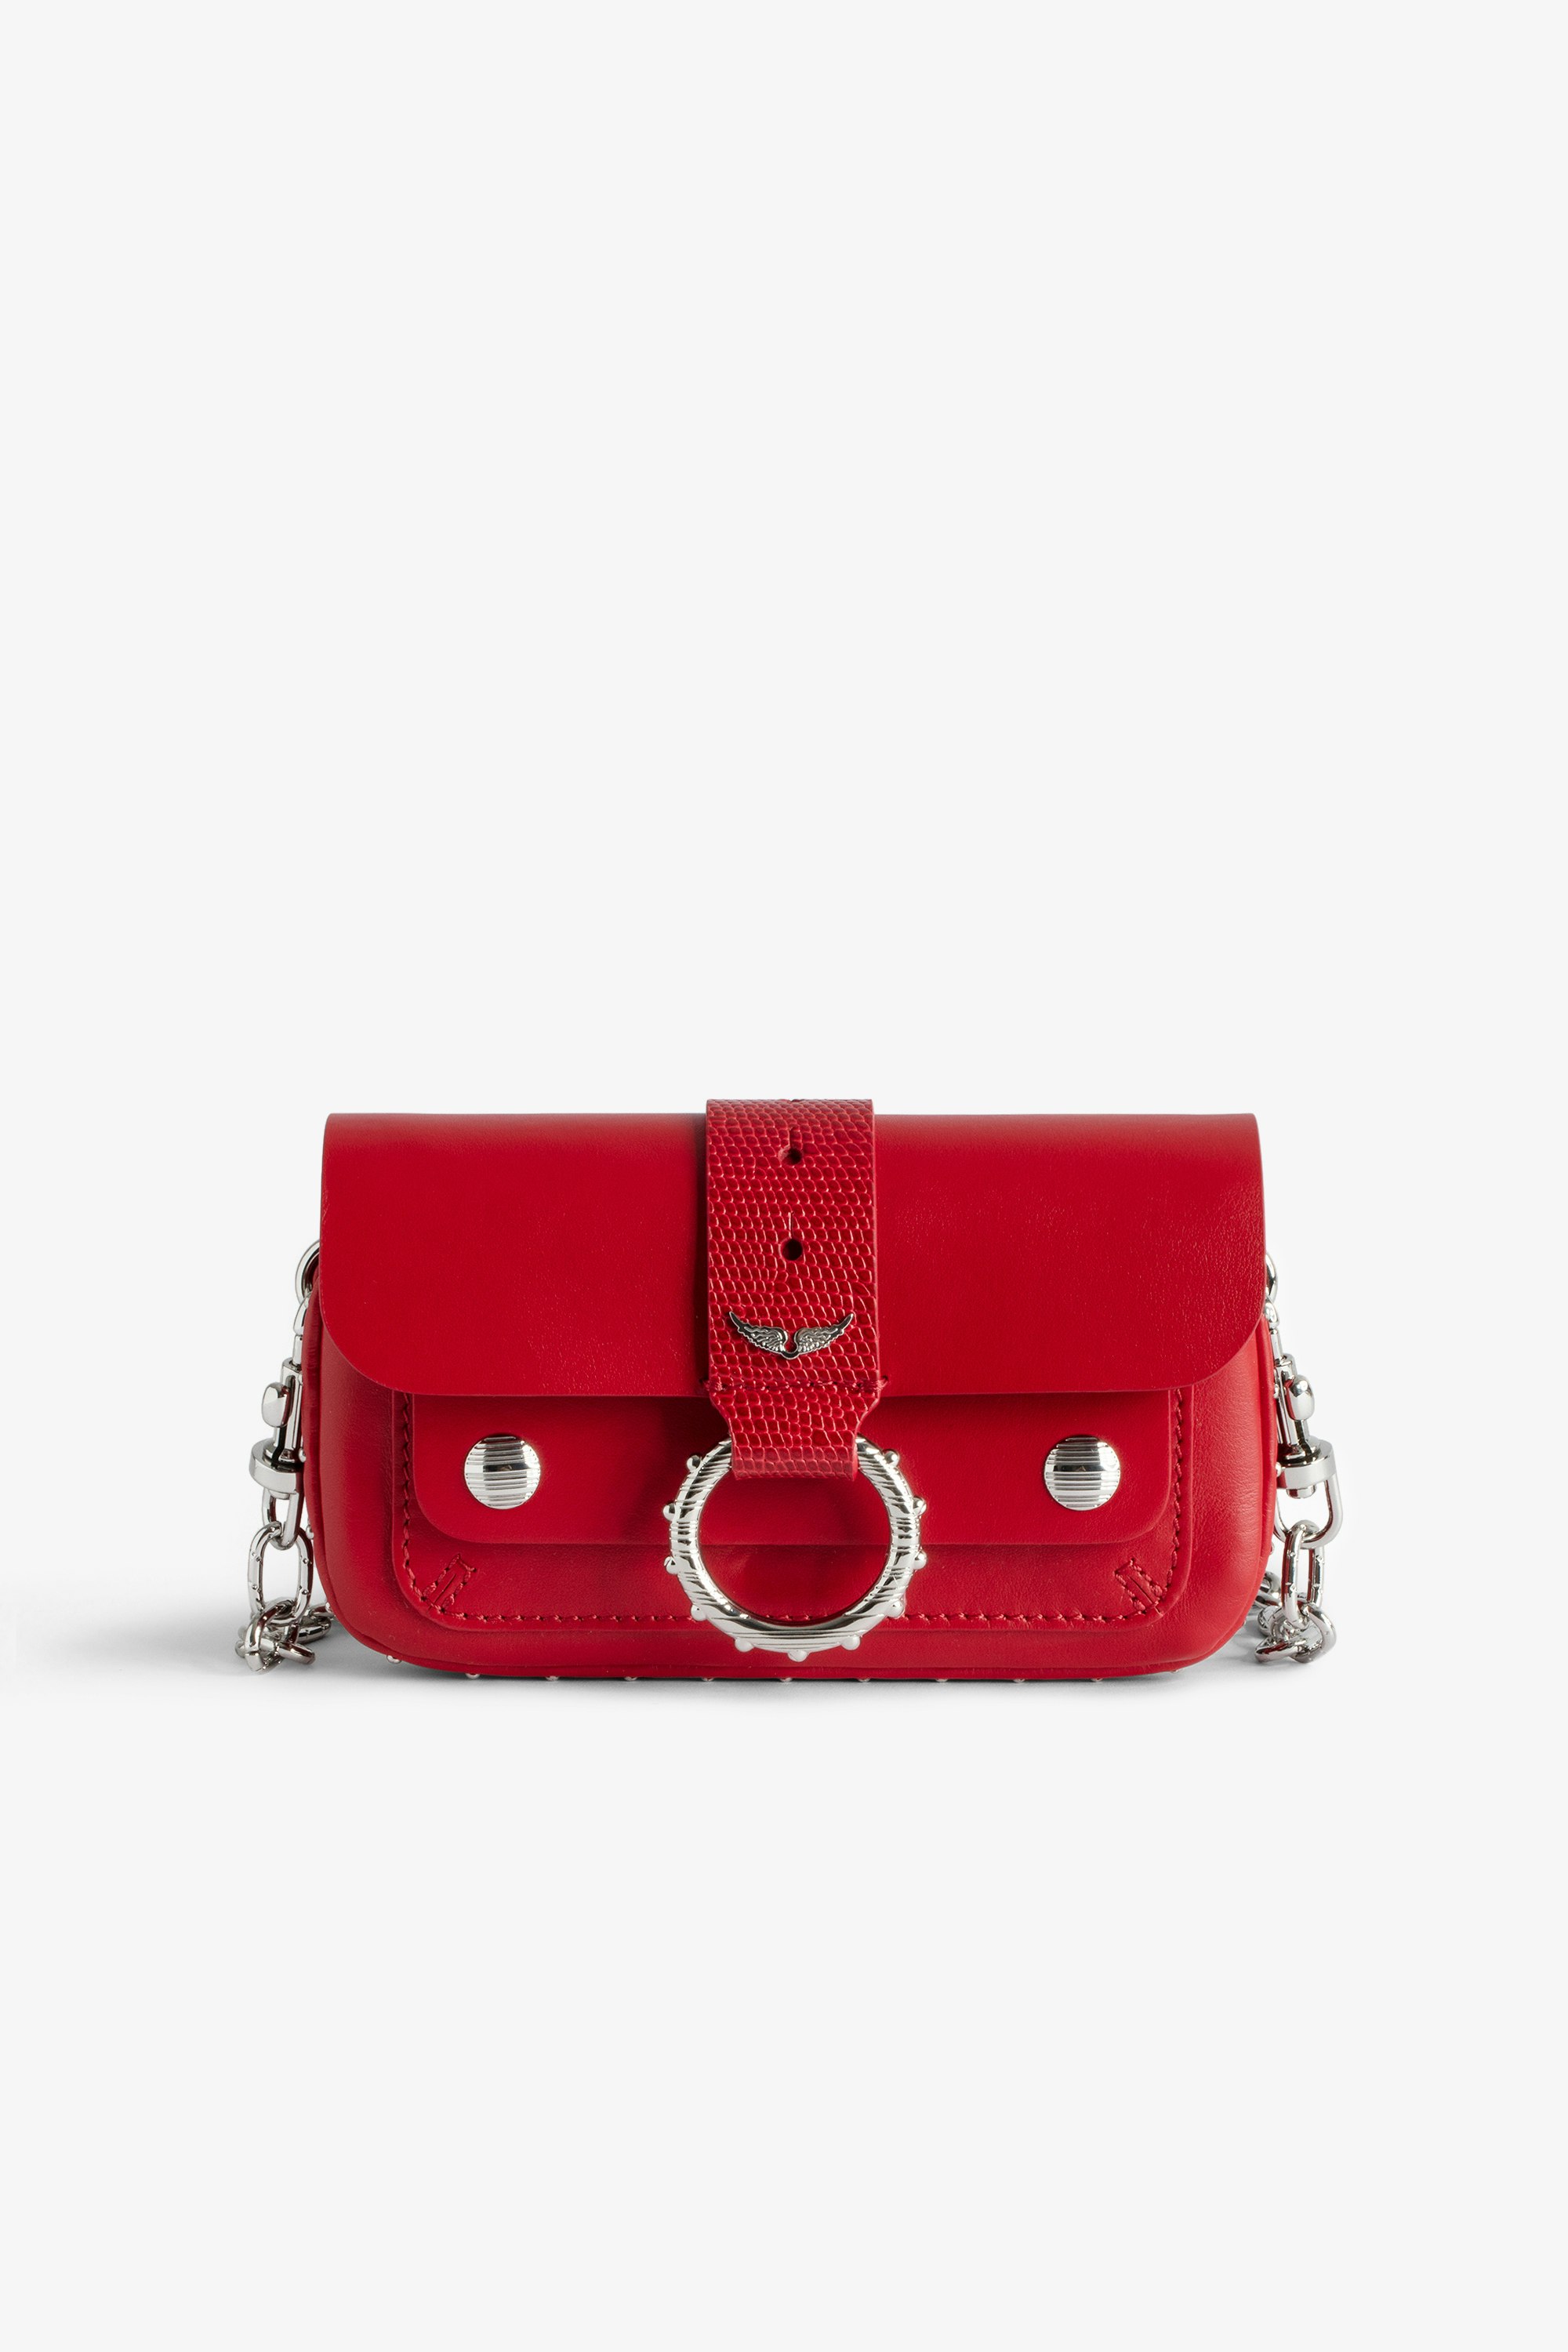 Borsa Kate Wallet - Mini borsa in pelle liscia rossa con catena in metallo e passante in pelle goffrata effetto iguana da donna.